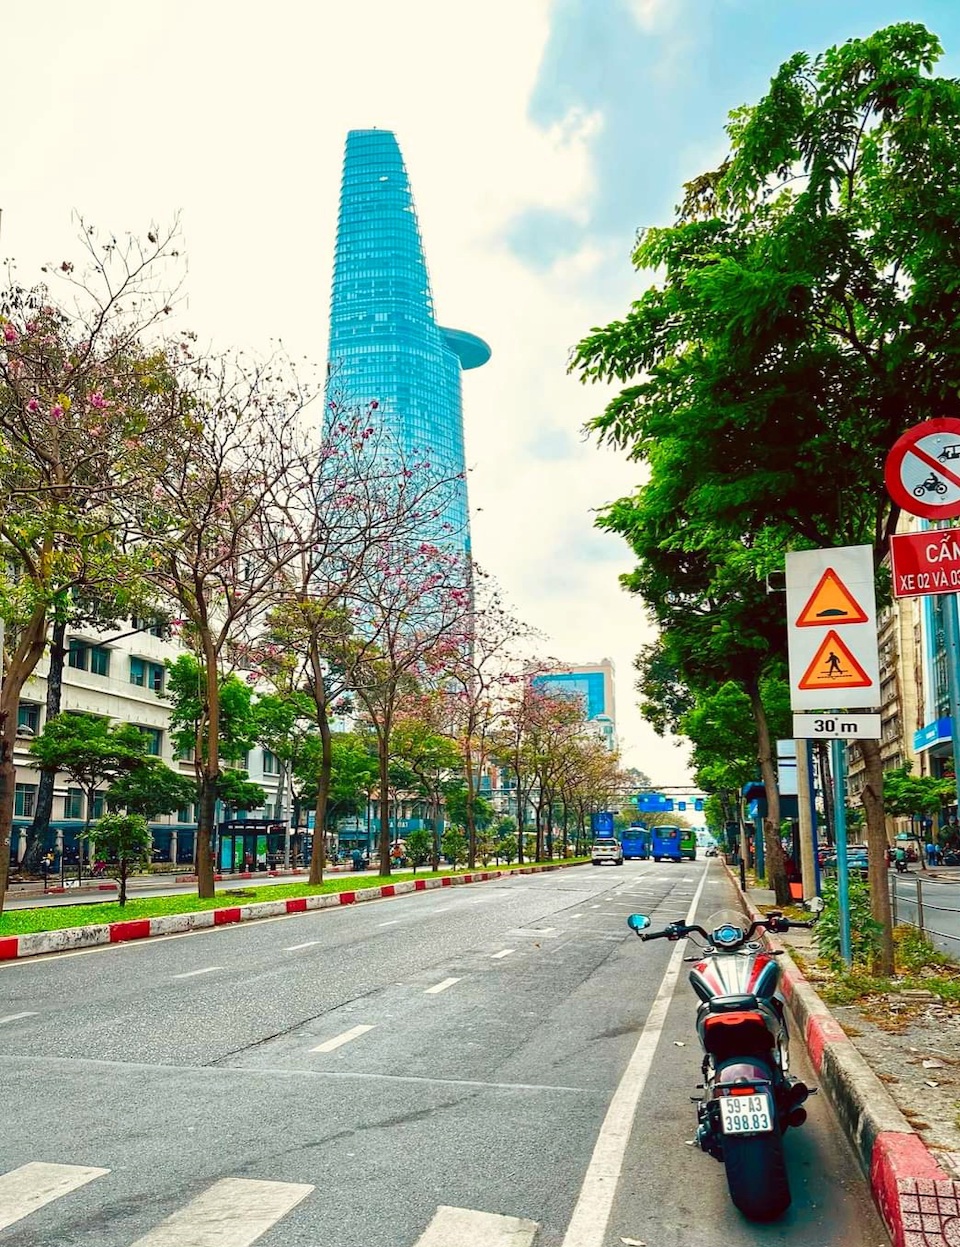 Đường phố TP Hồ Chí Minh thông thoáng, biển Phan Thiết đông khách - Ảnh 1